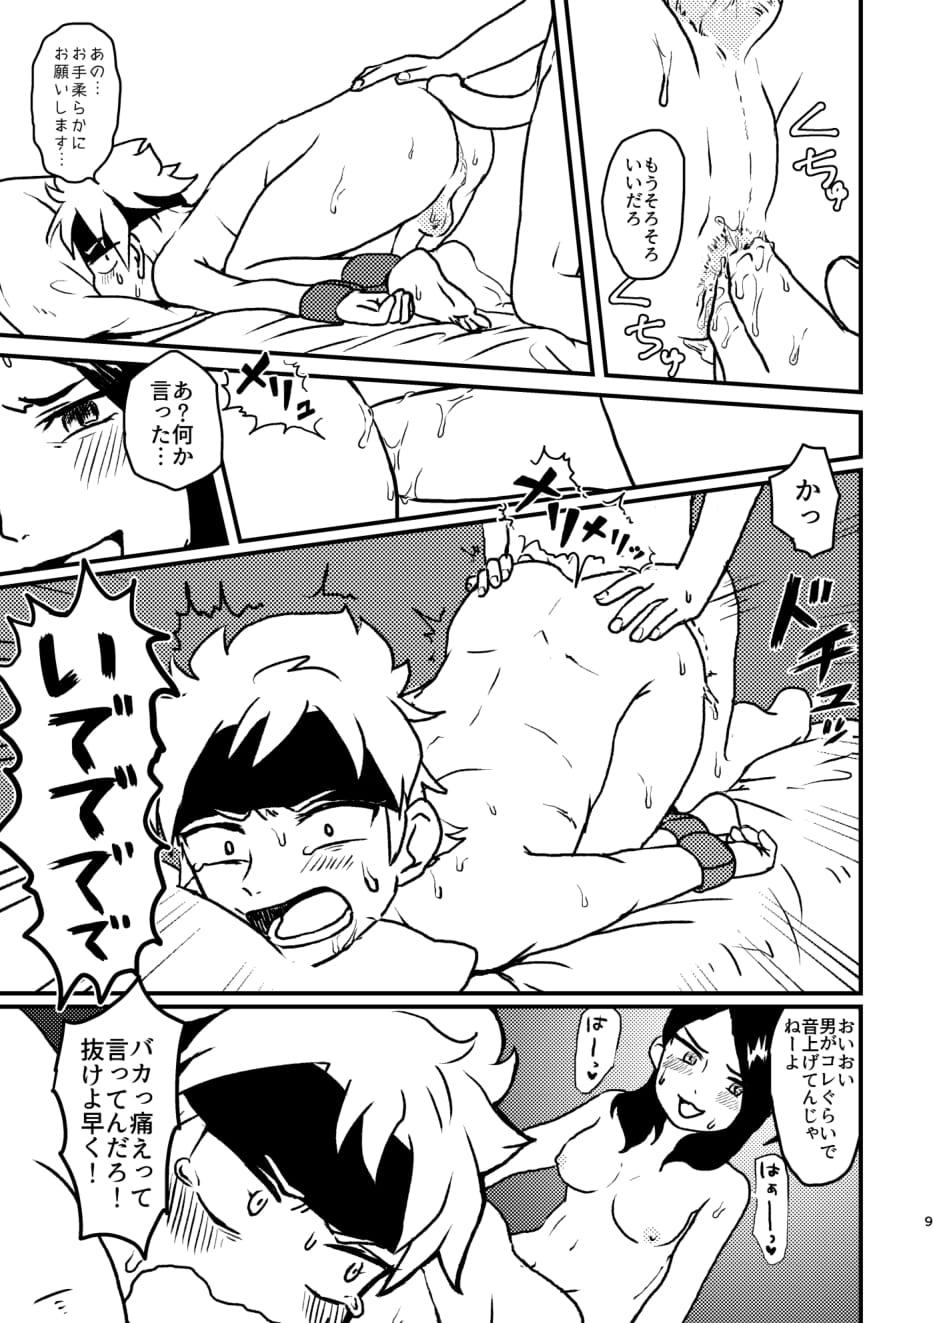 Pareja Don't Stop! Minori-chan - Inazuma eleven go Gang Bang - Page 9